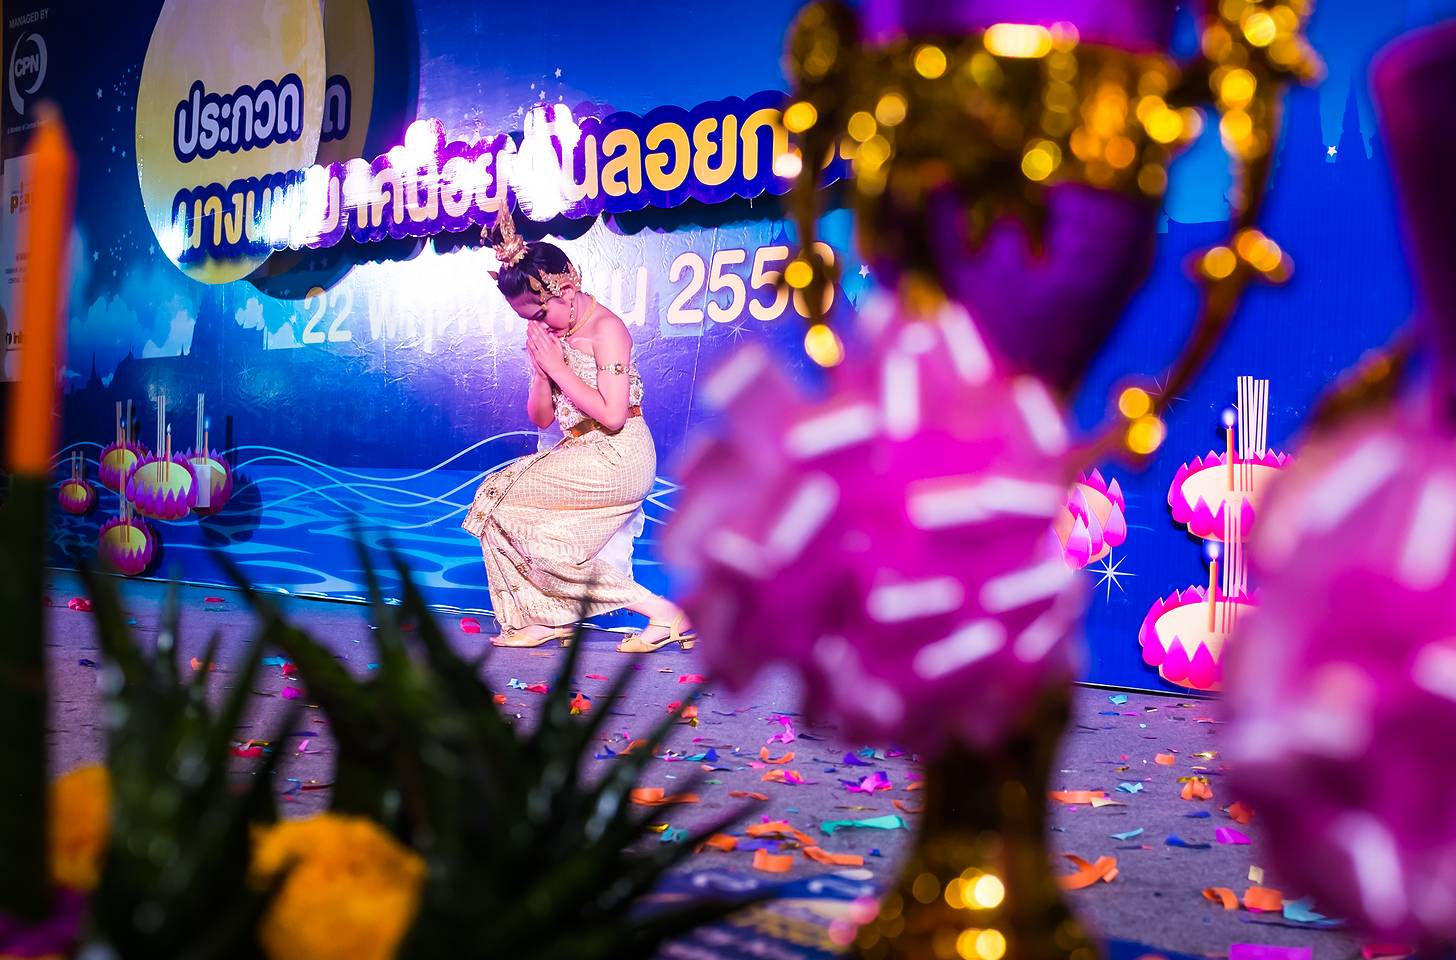 Świąteczny "Mam talent" dla dzieci w centrum handlowym Central Plaza (Loi Krathong 2015)